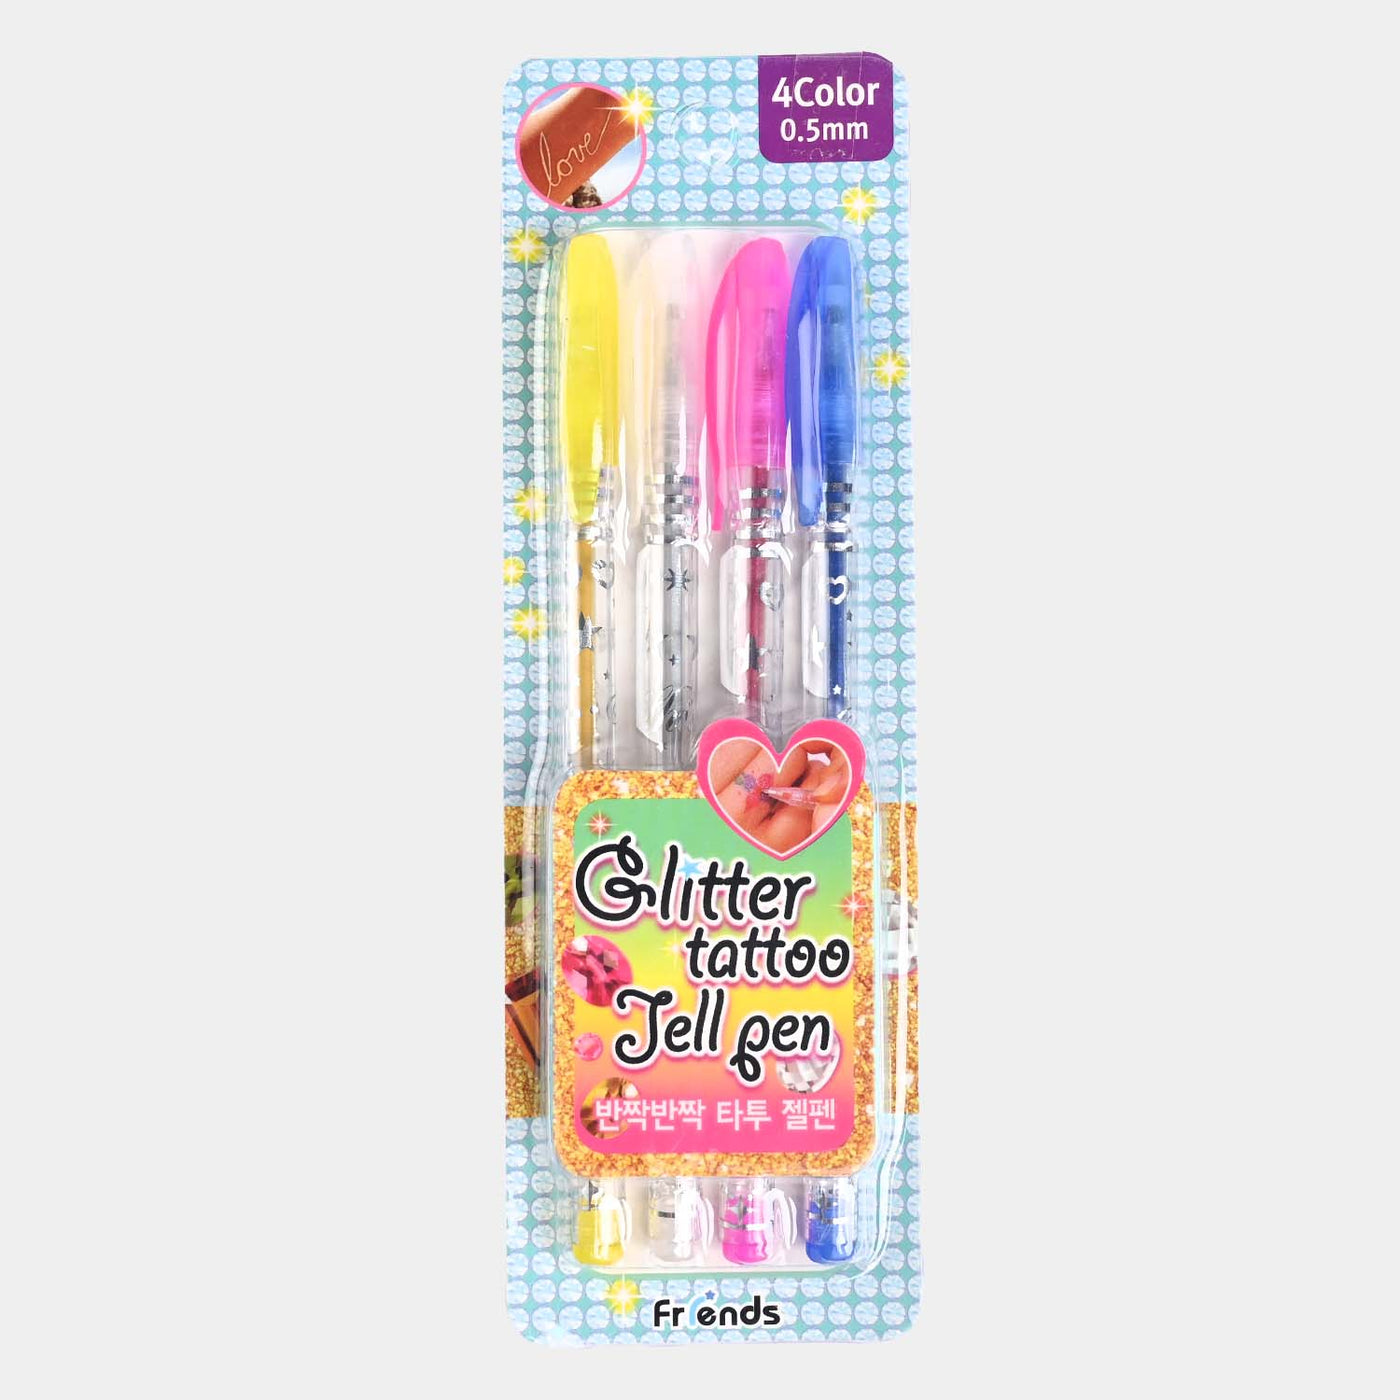 Glitter Gel Pen 4PCs Set For kids